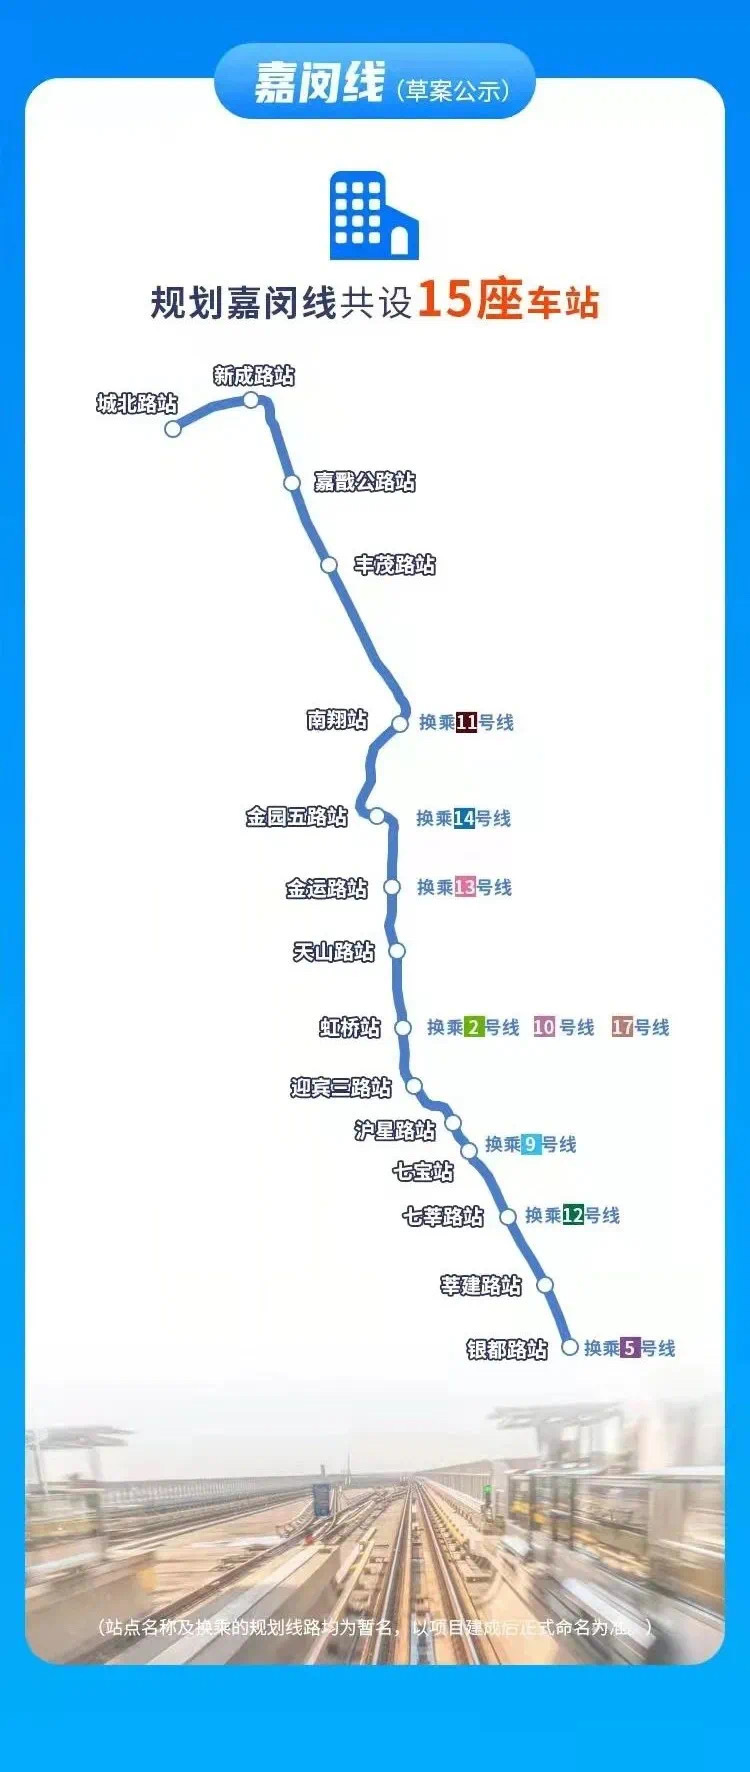 太仓未来可以与上海10余条地铁的换乘图来啦